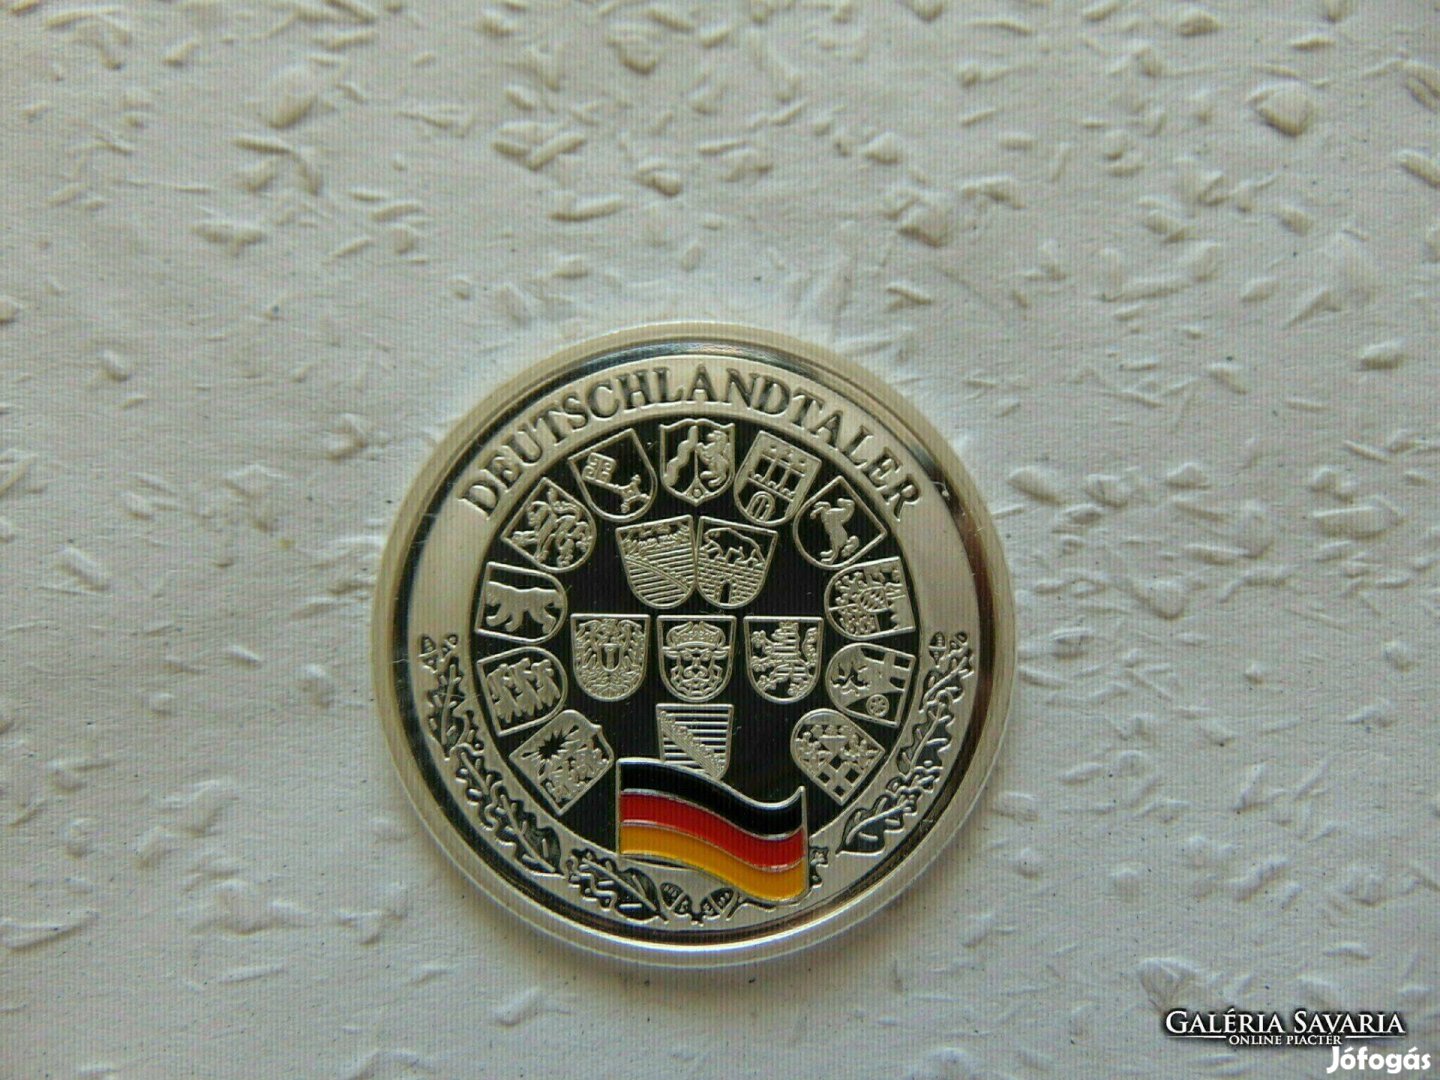 Németország - Berlin ezüst emlékérem PP 20.00 gramm 999 % ezüst